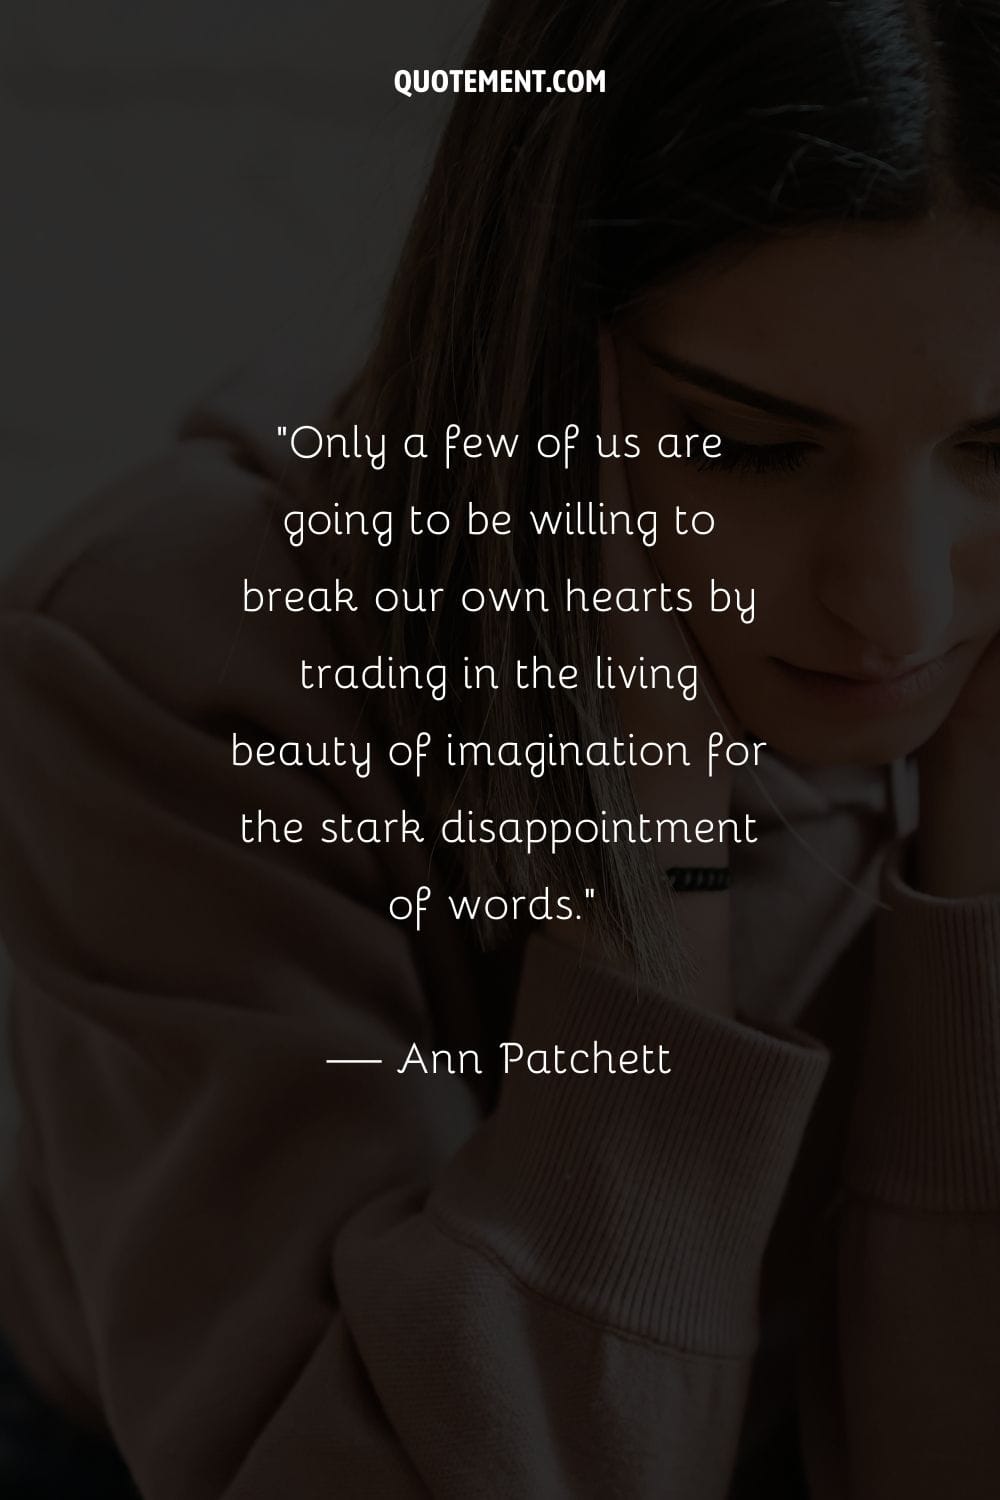 Sólo unos pocos de nosotros estaremos dispuestos a rompernos el corazón cambiando la belleza viva de la imaginación por la cruda decepción de las palabras...